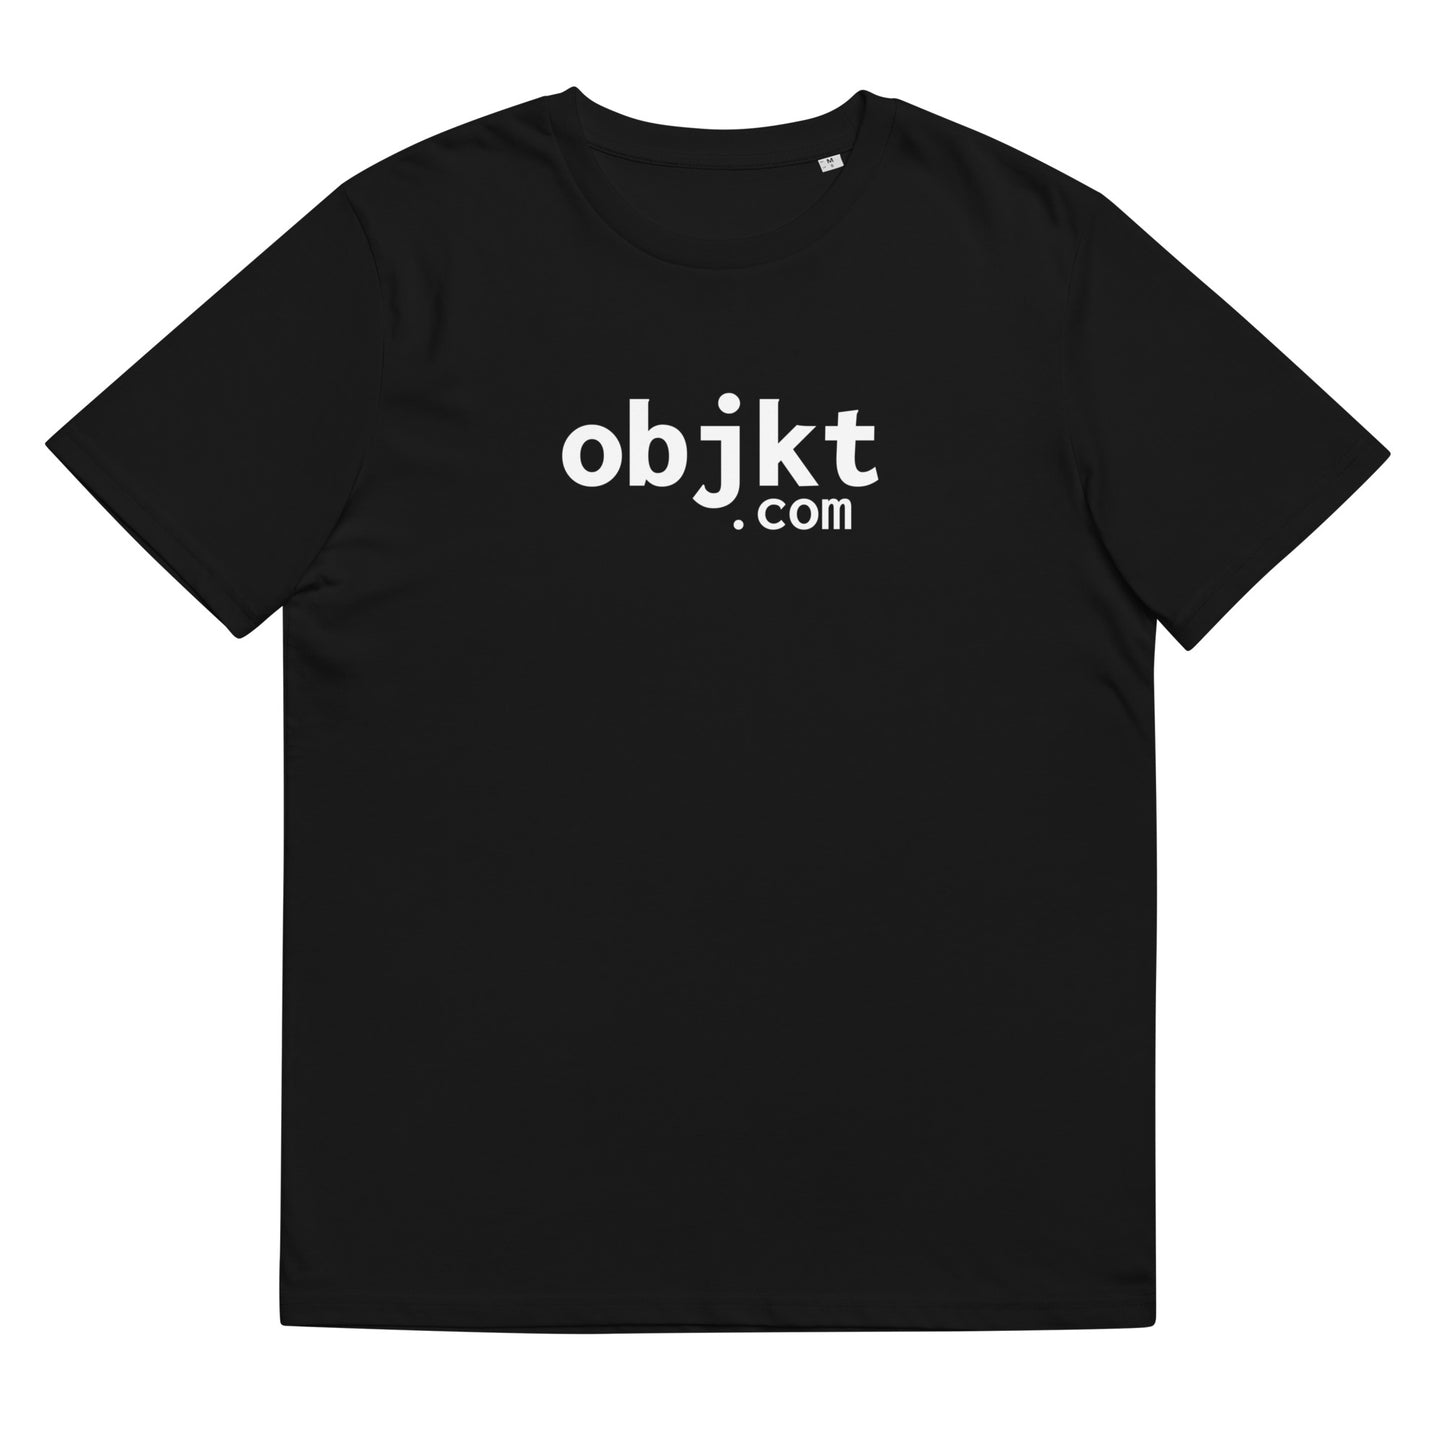 objkt.com original logo tee